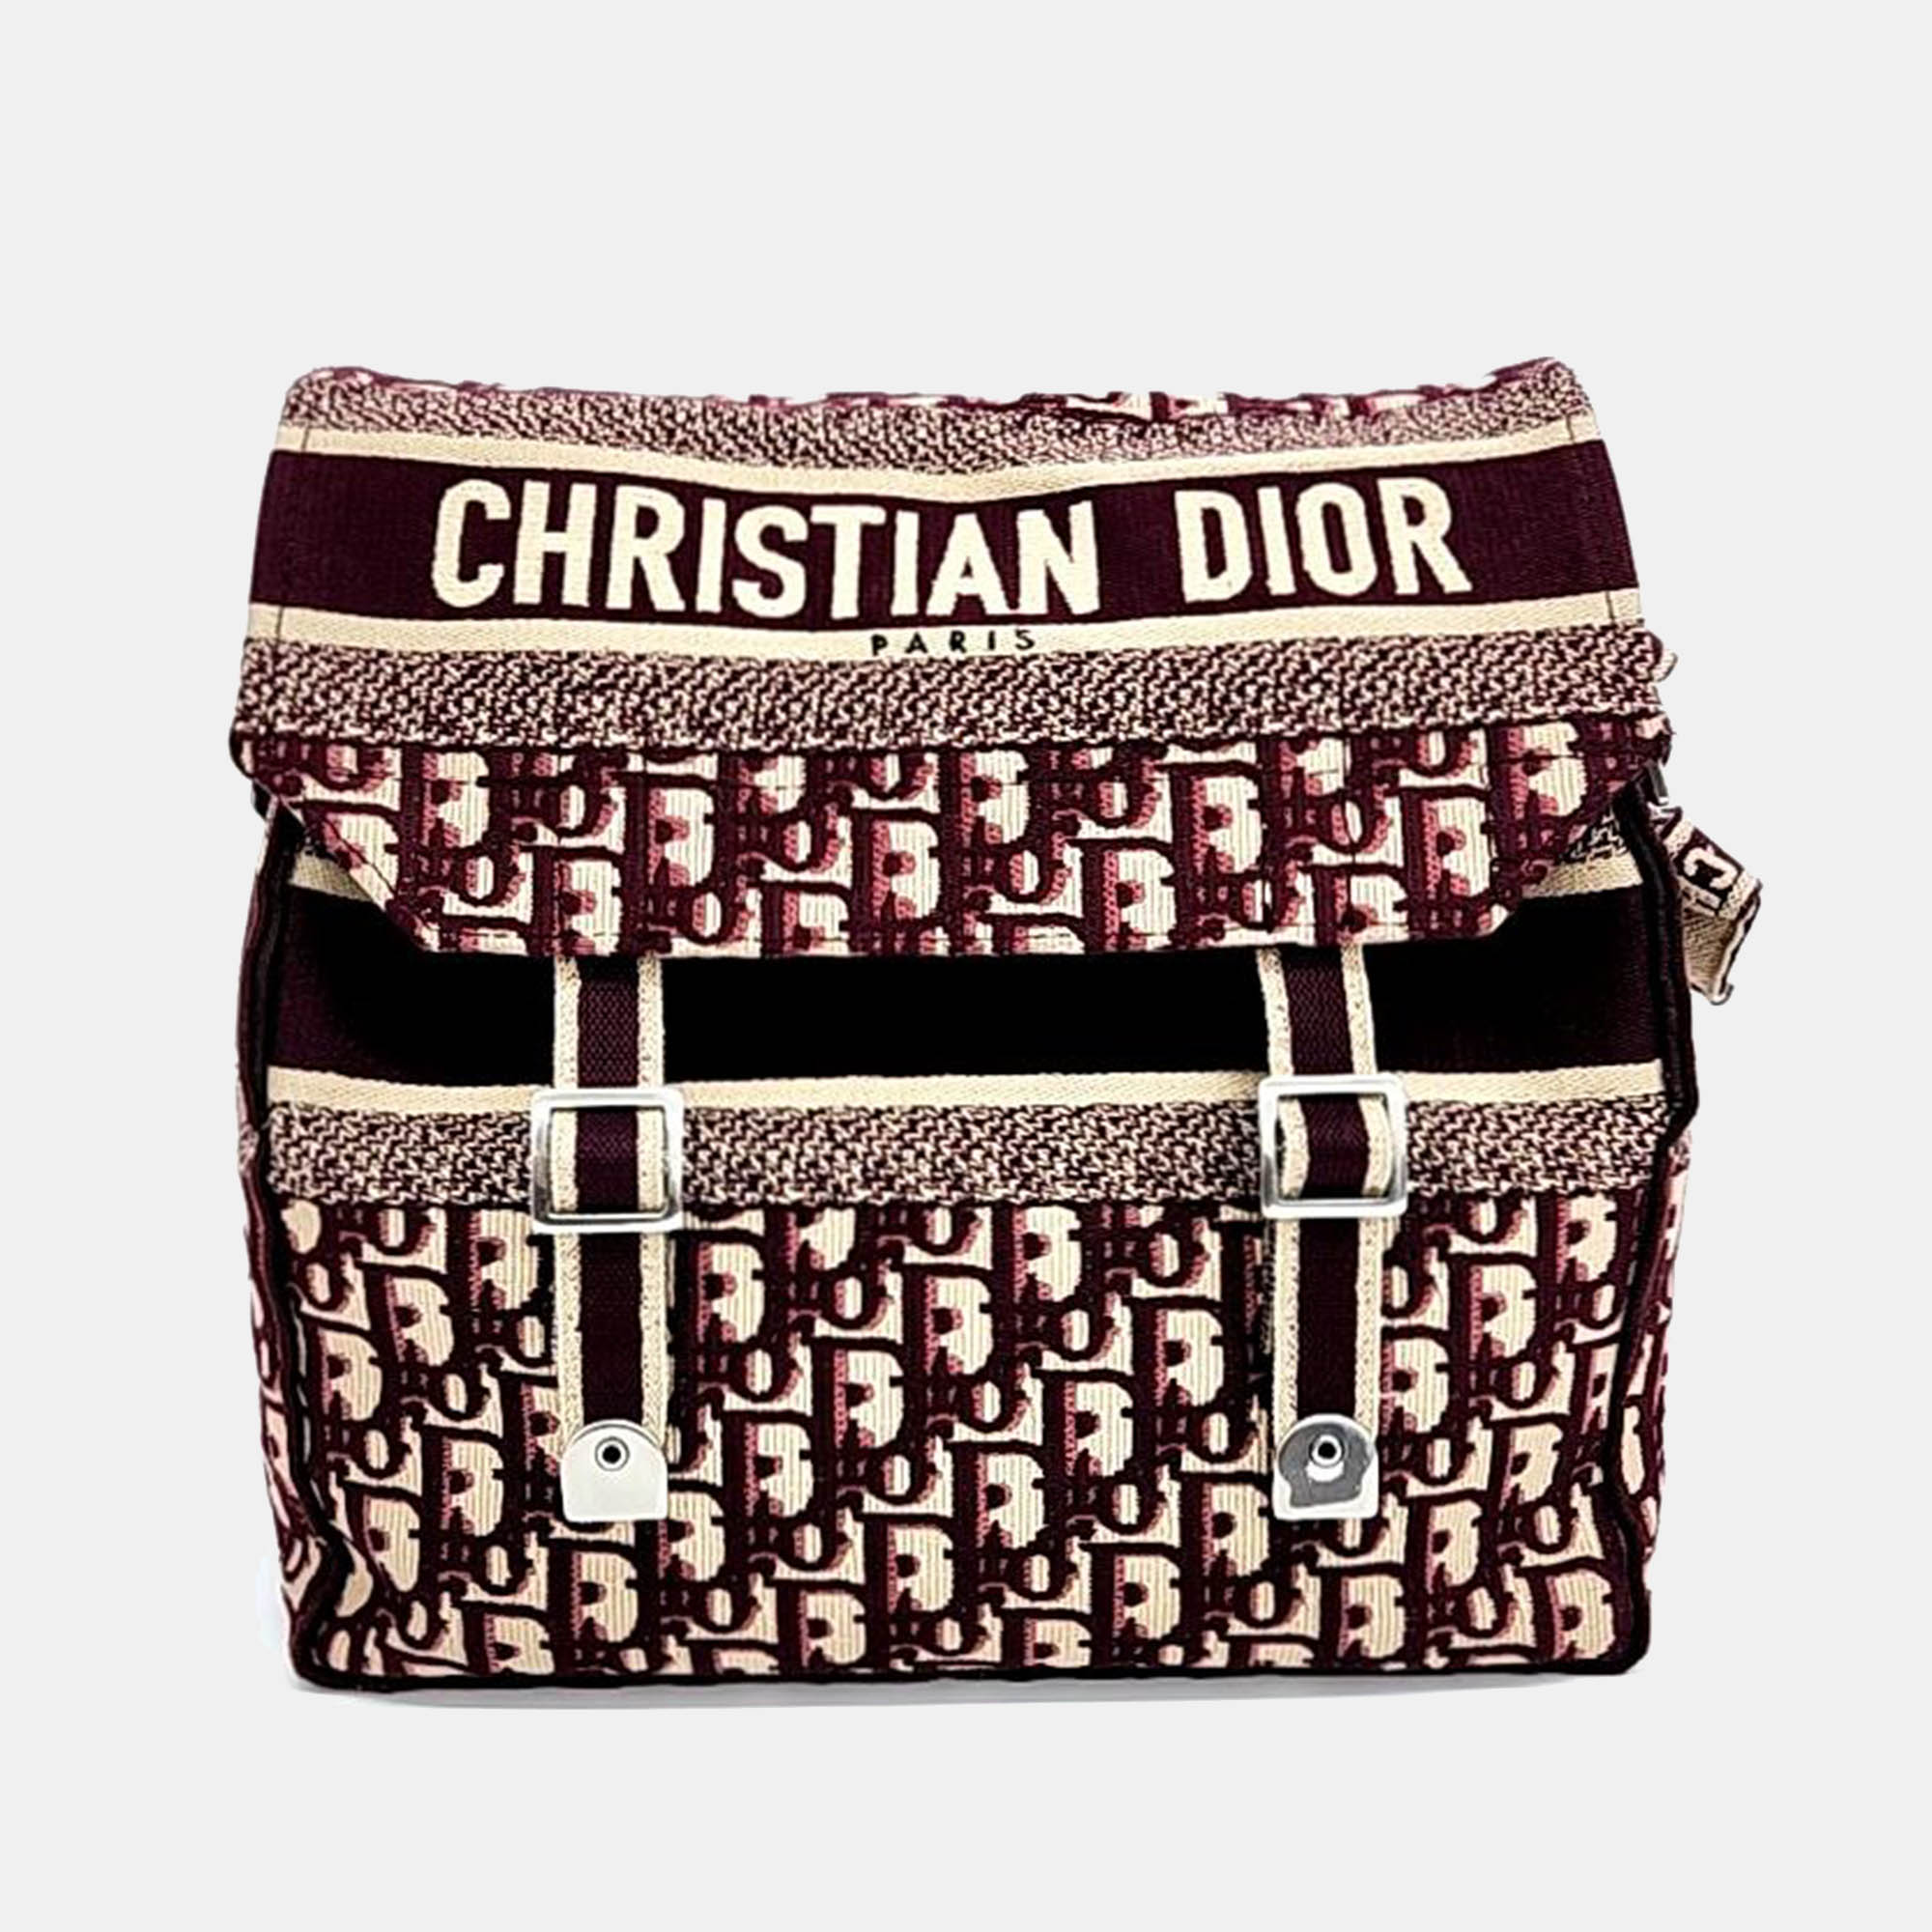 Christian dior burgundy logo oblique diorcmap messenger bag